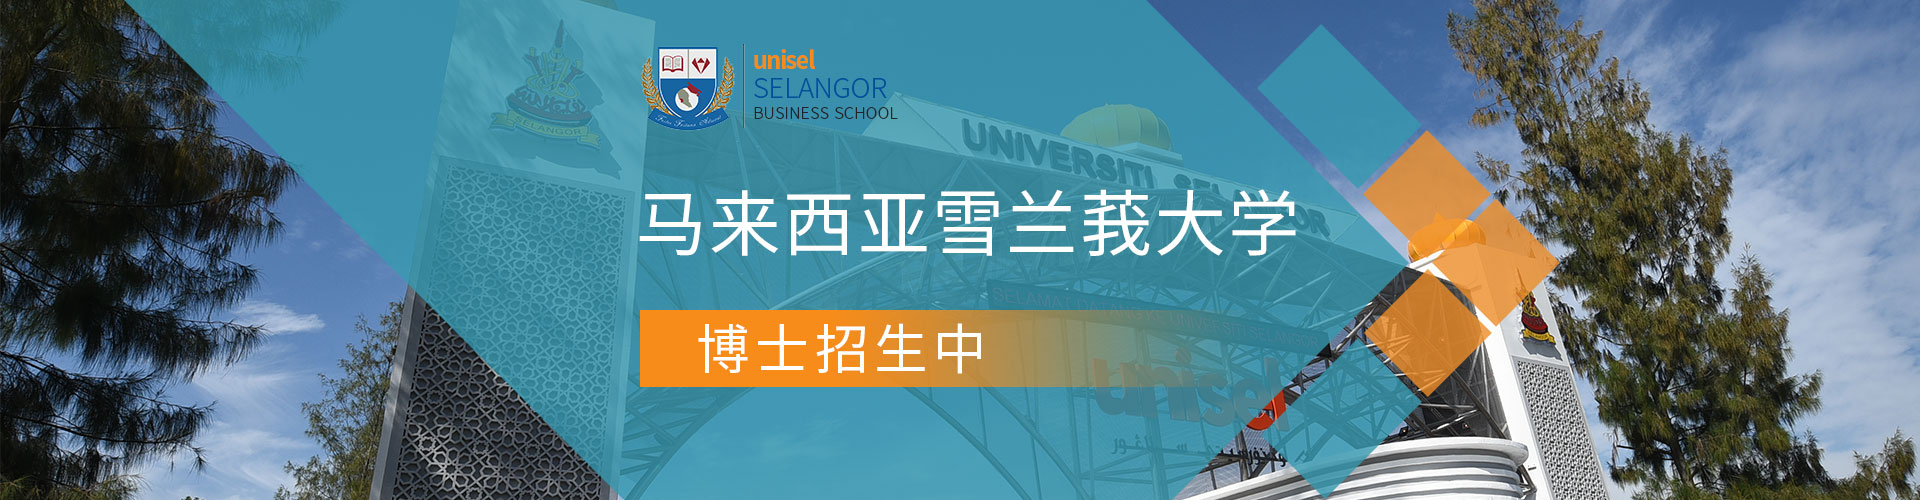 馬來西亞雪蘭莪大學招生簡章